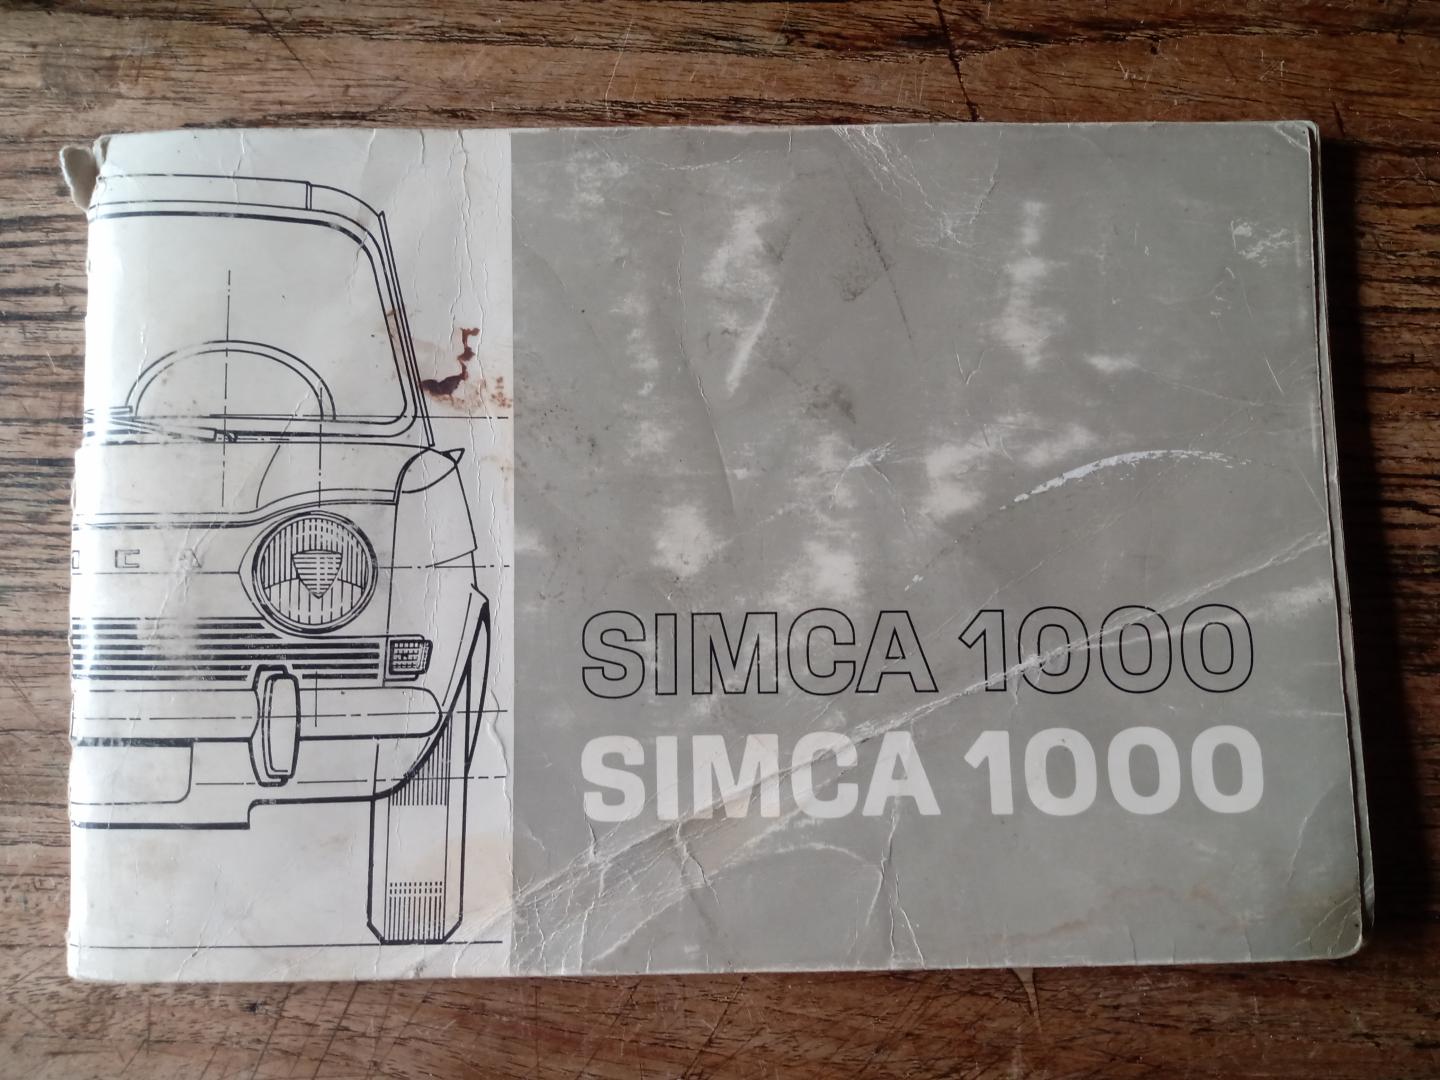 Simca France - simca 1000 handleiding, gebruik, onderhoud, technische gegevens.